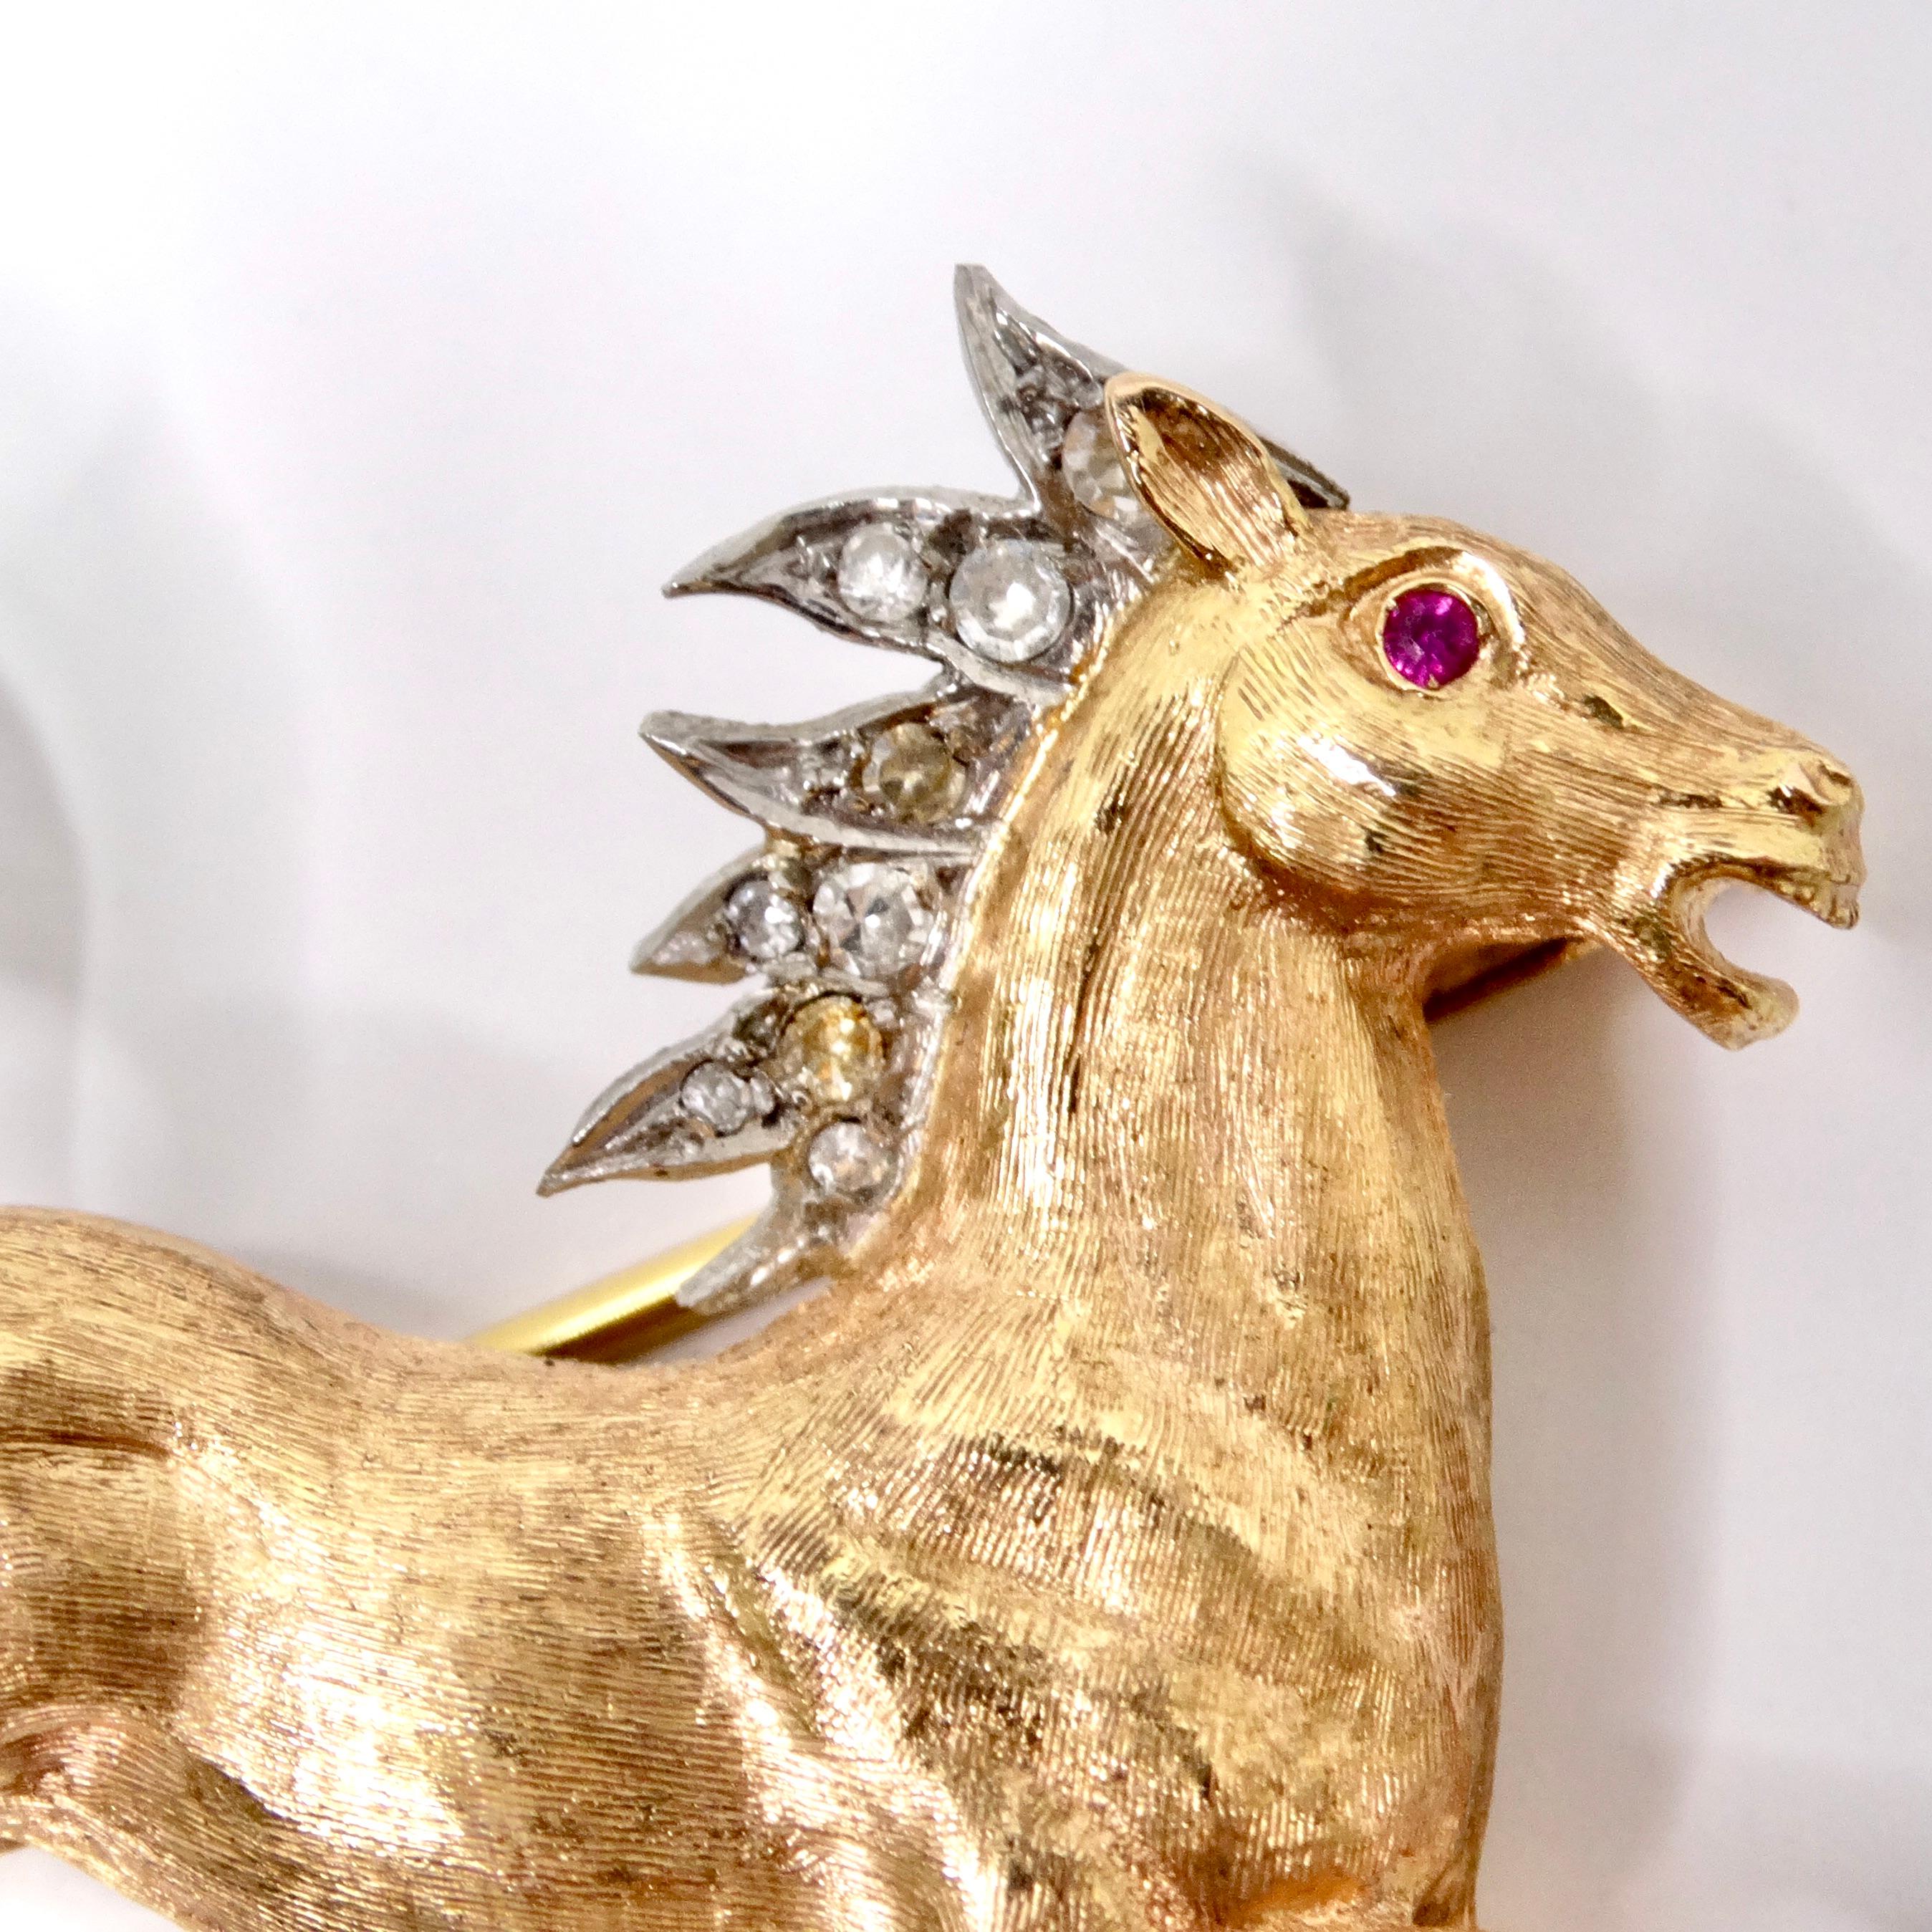 Wir stellen die exquisite 18K Gold Diamond Horse Pin vor, eine atemberaubende Vintage-Brosche, die zeitlose Eleganz und Luxus ausstrahlt. Diese in den 1940er Jahren gefertigte Brosche aus zweifarbigem Gelb- und Weißgold mit laufendem Pferd ist ein